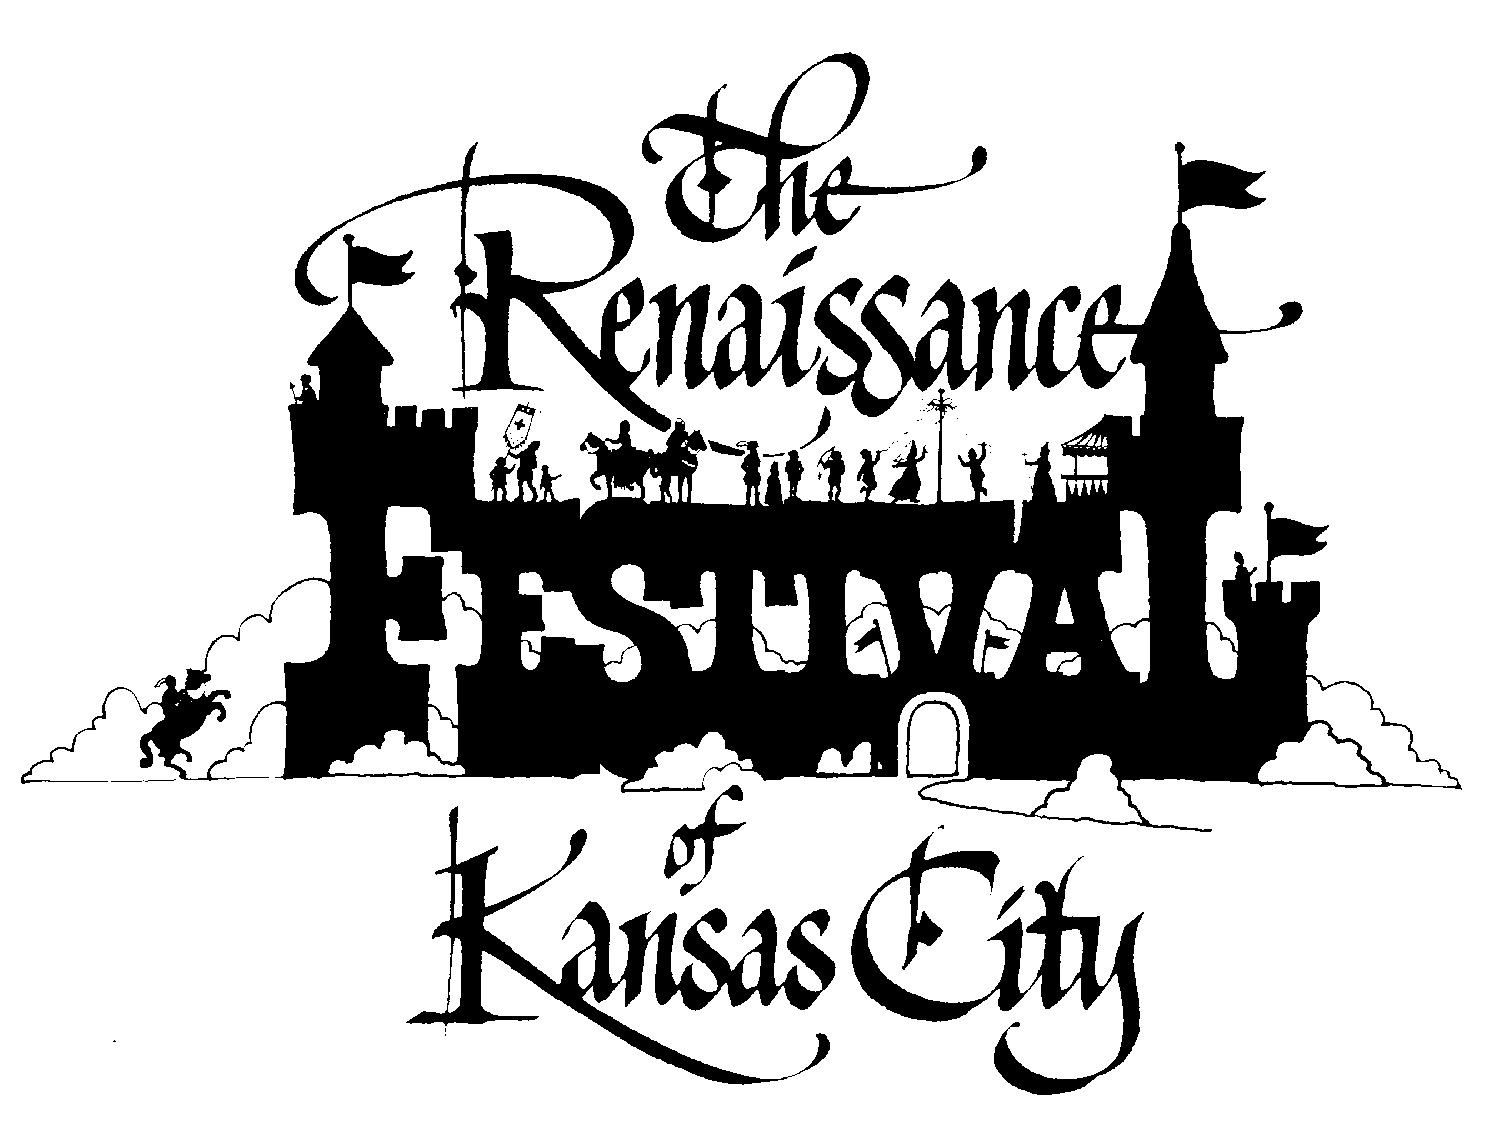 The Kansas City Renaissance Festival | Ettractions.